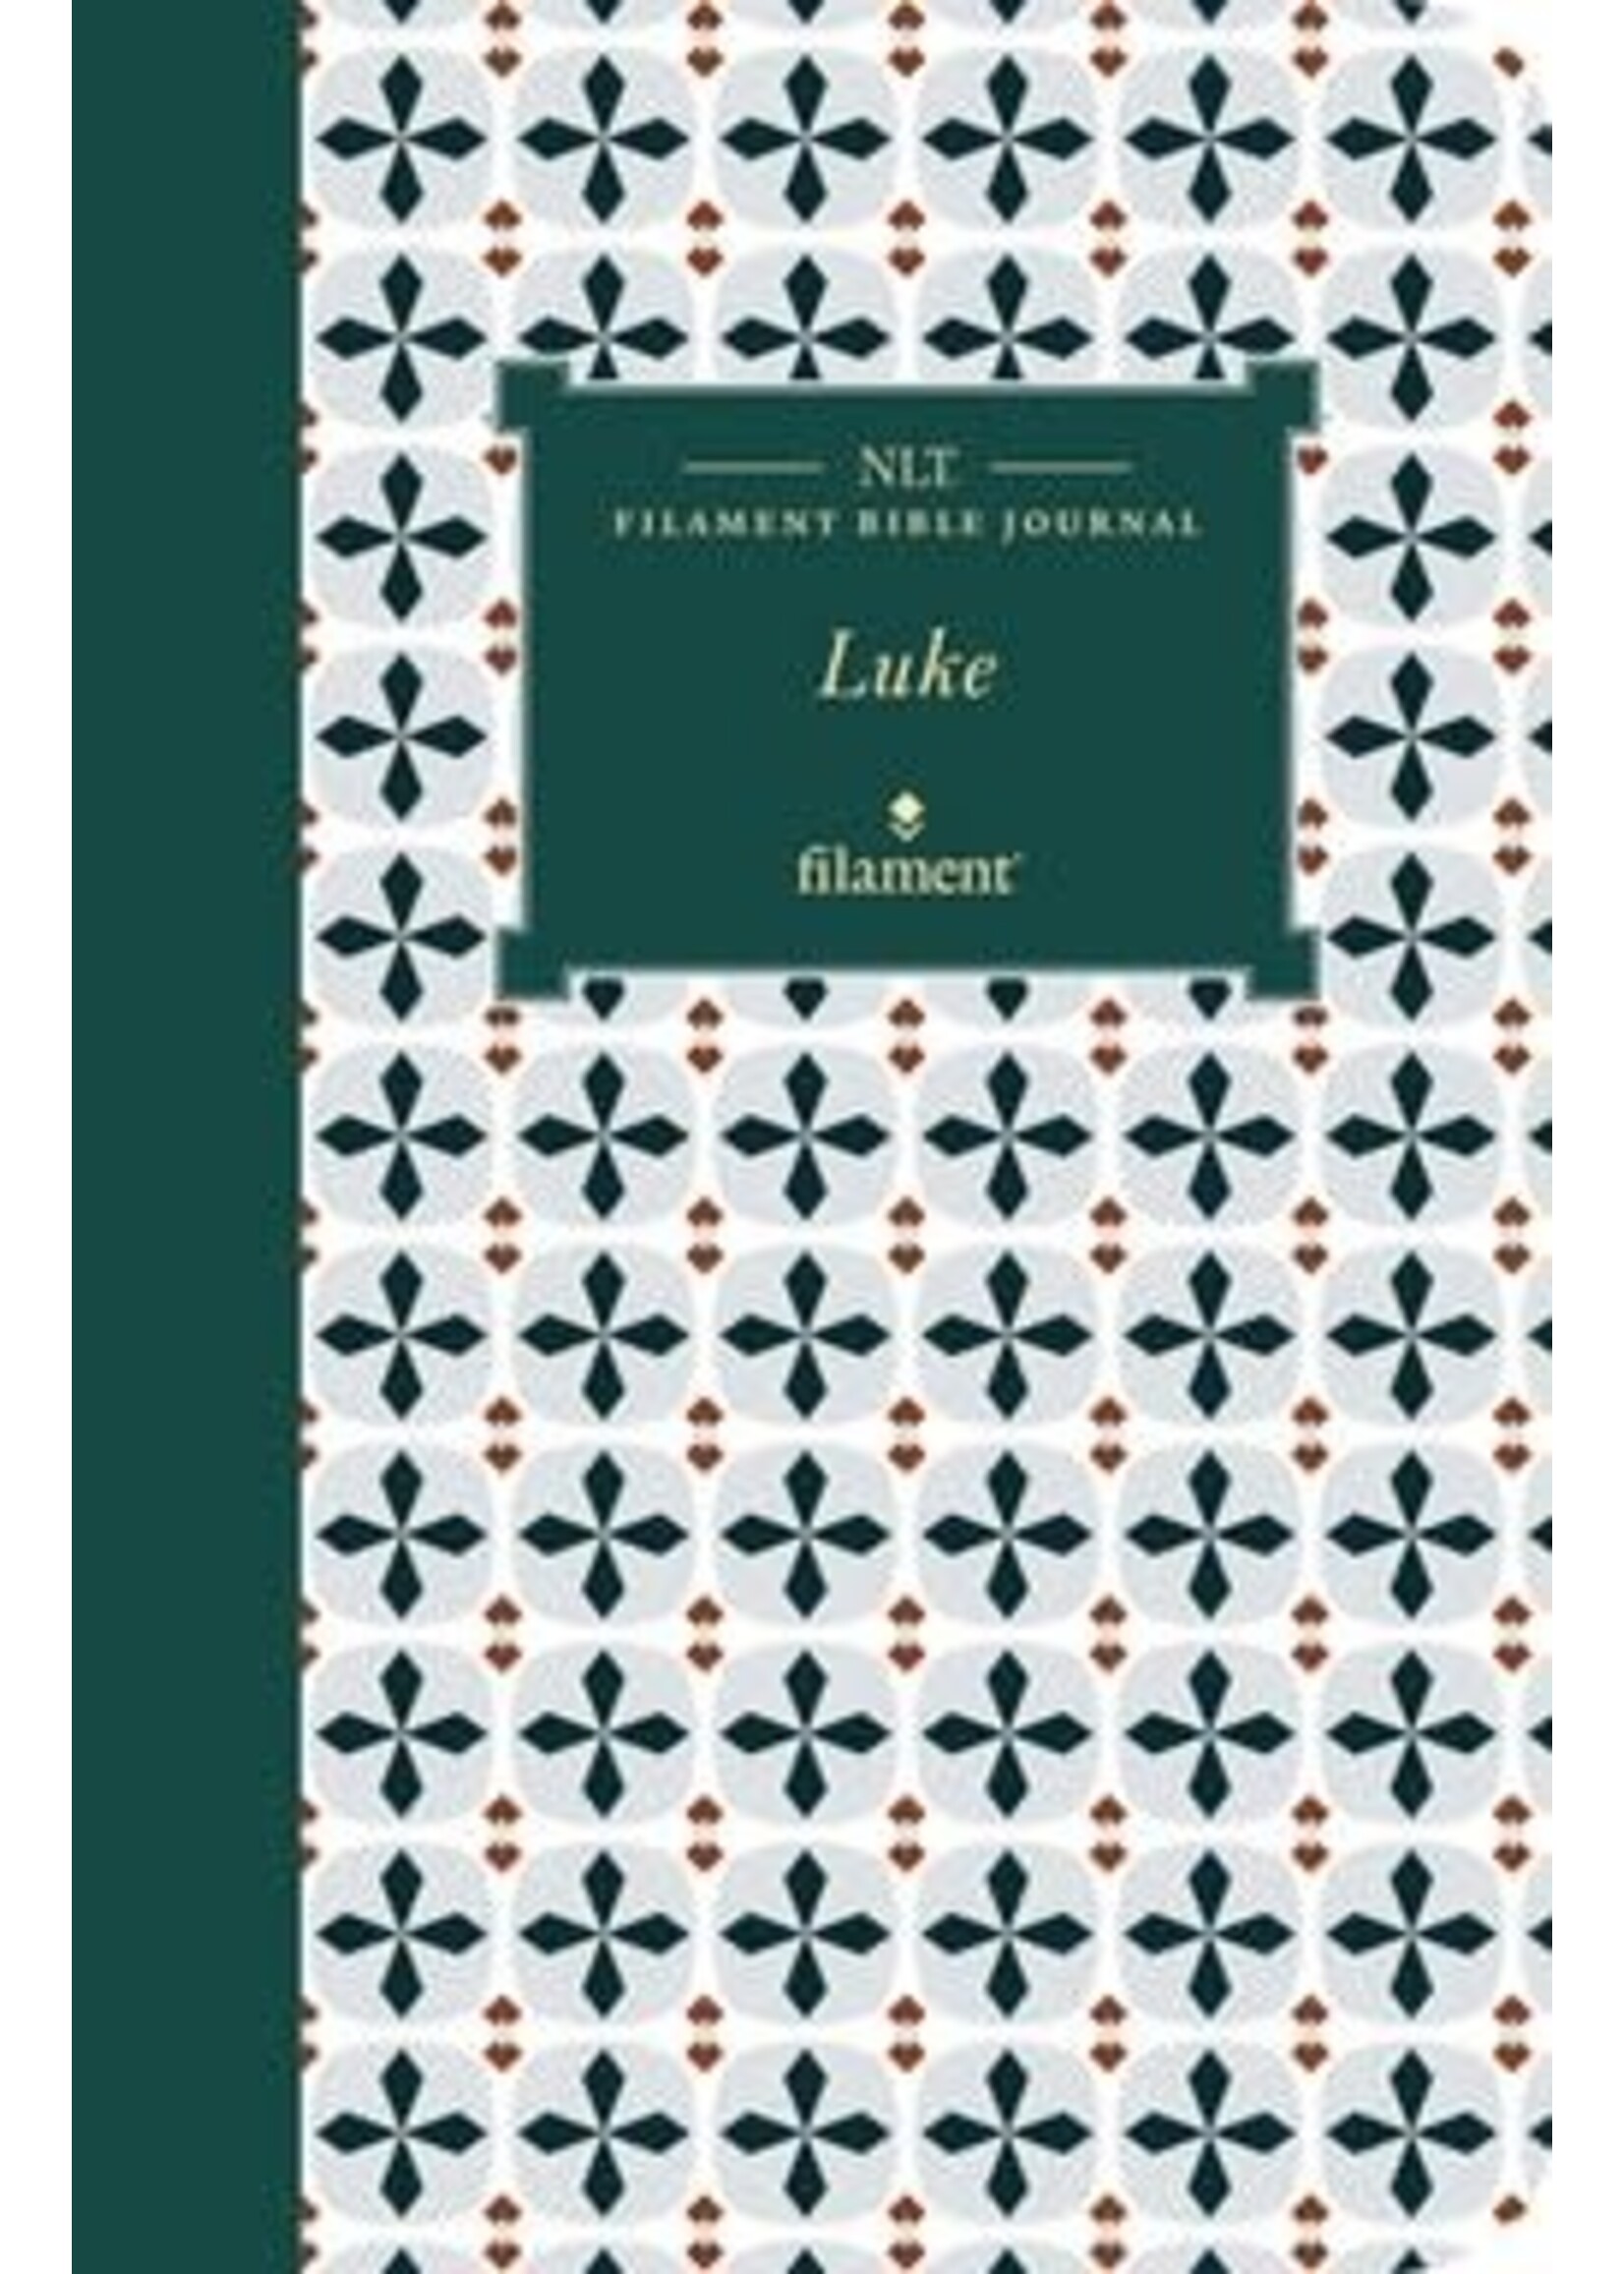 Luke NLT Filament Bible Journal